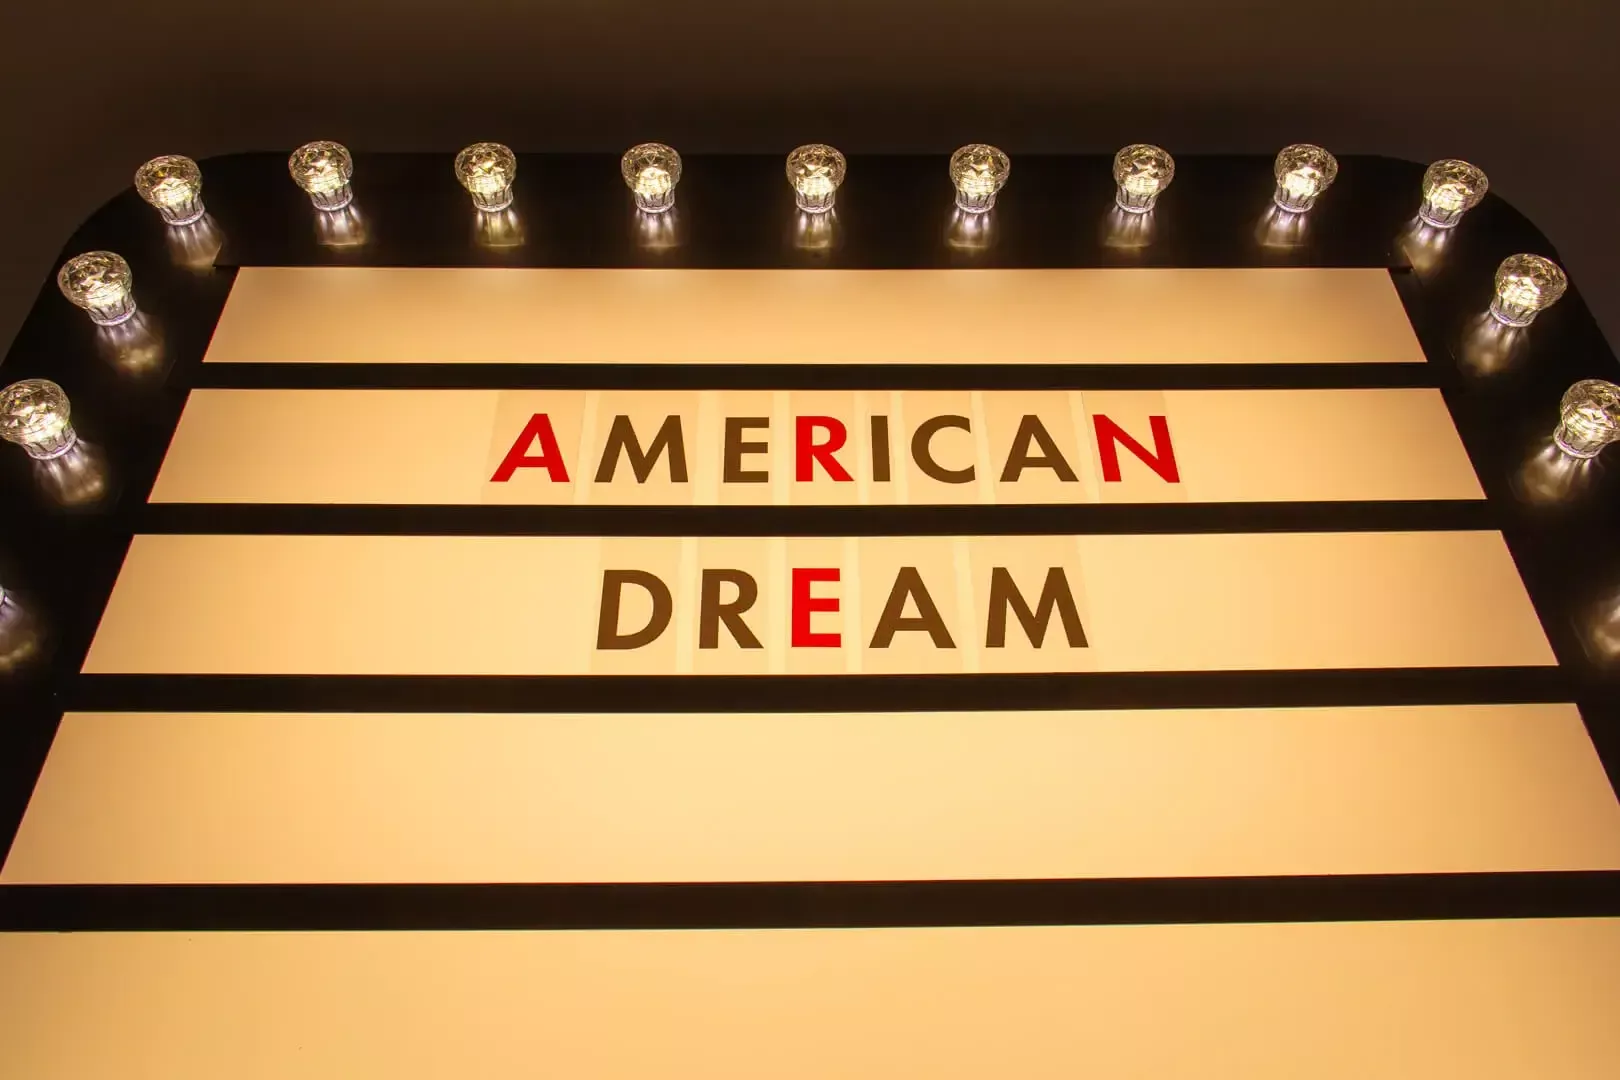 American Dream - bulb board with American Dream inscription